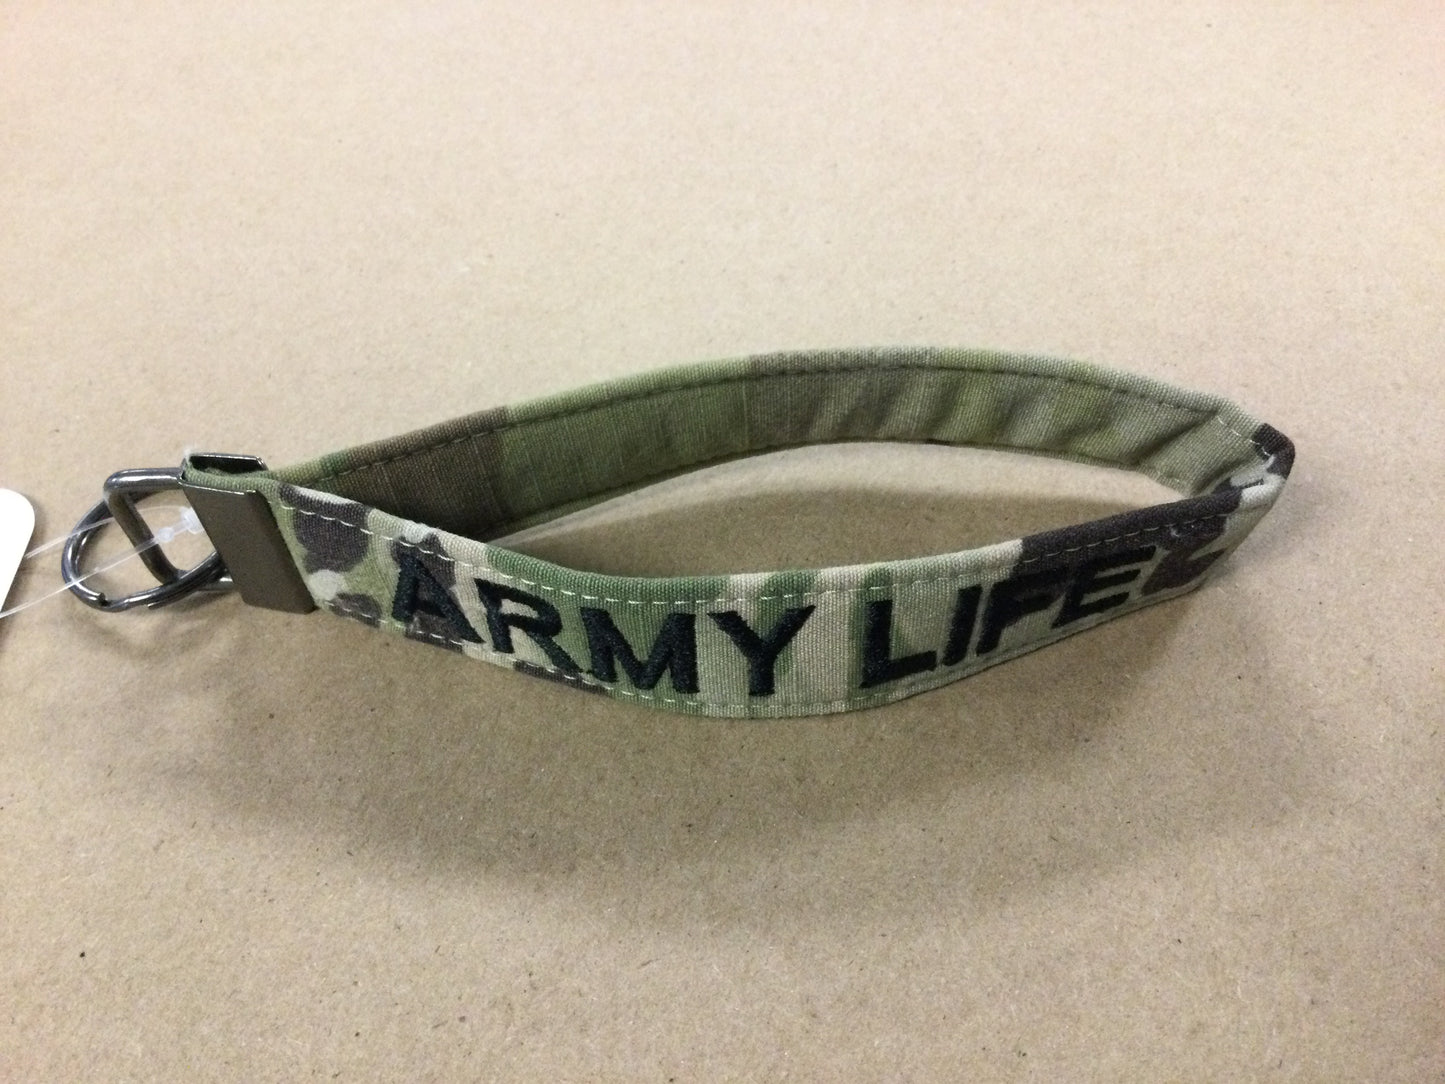 
                  
                    Army Life Keychain Wristlet
                  
                